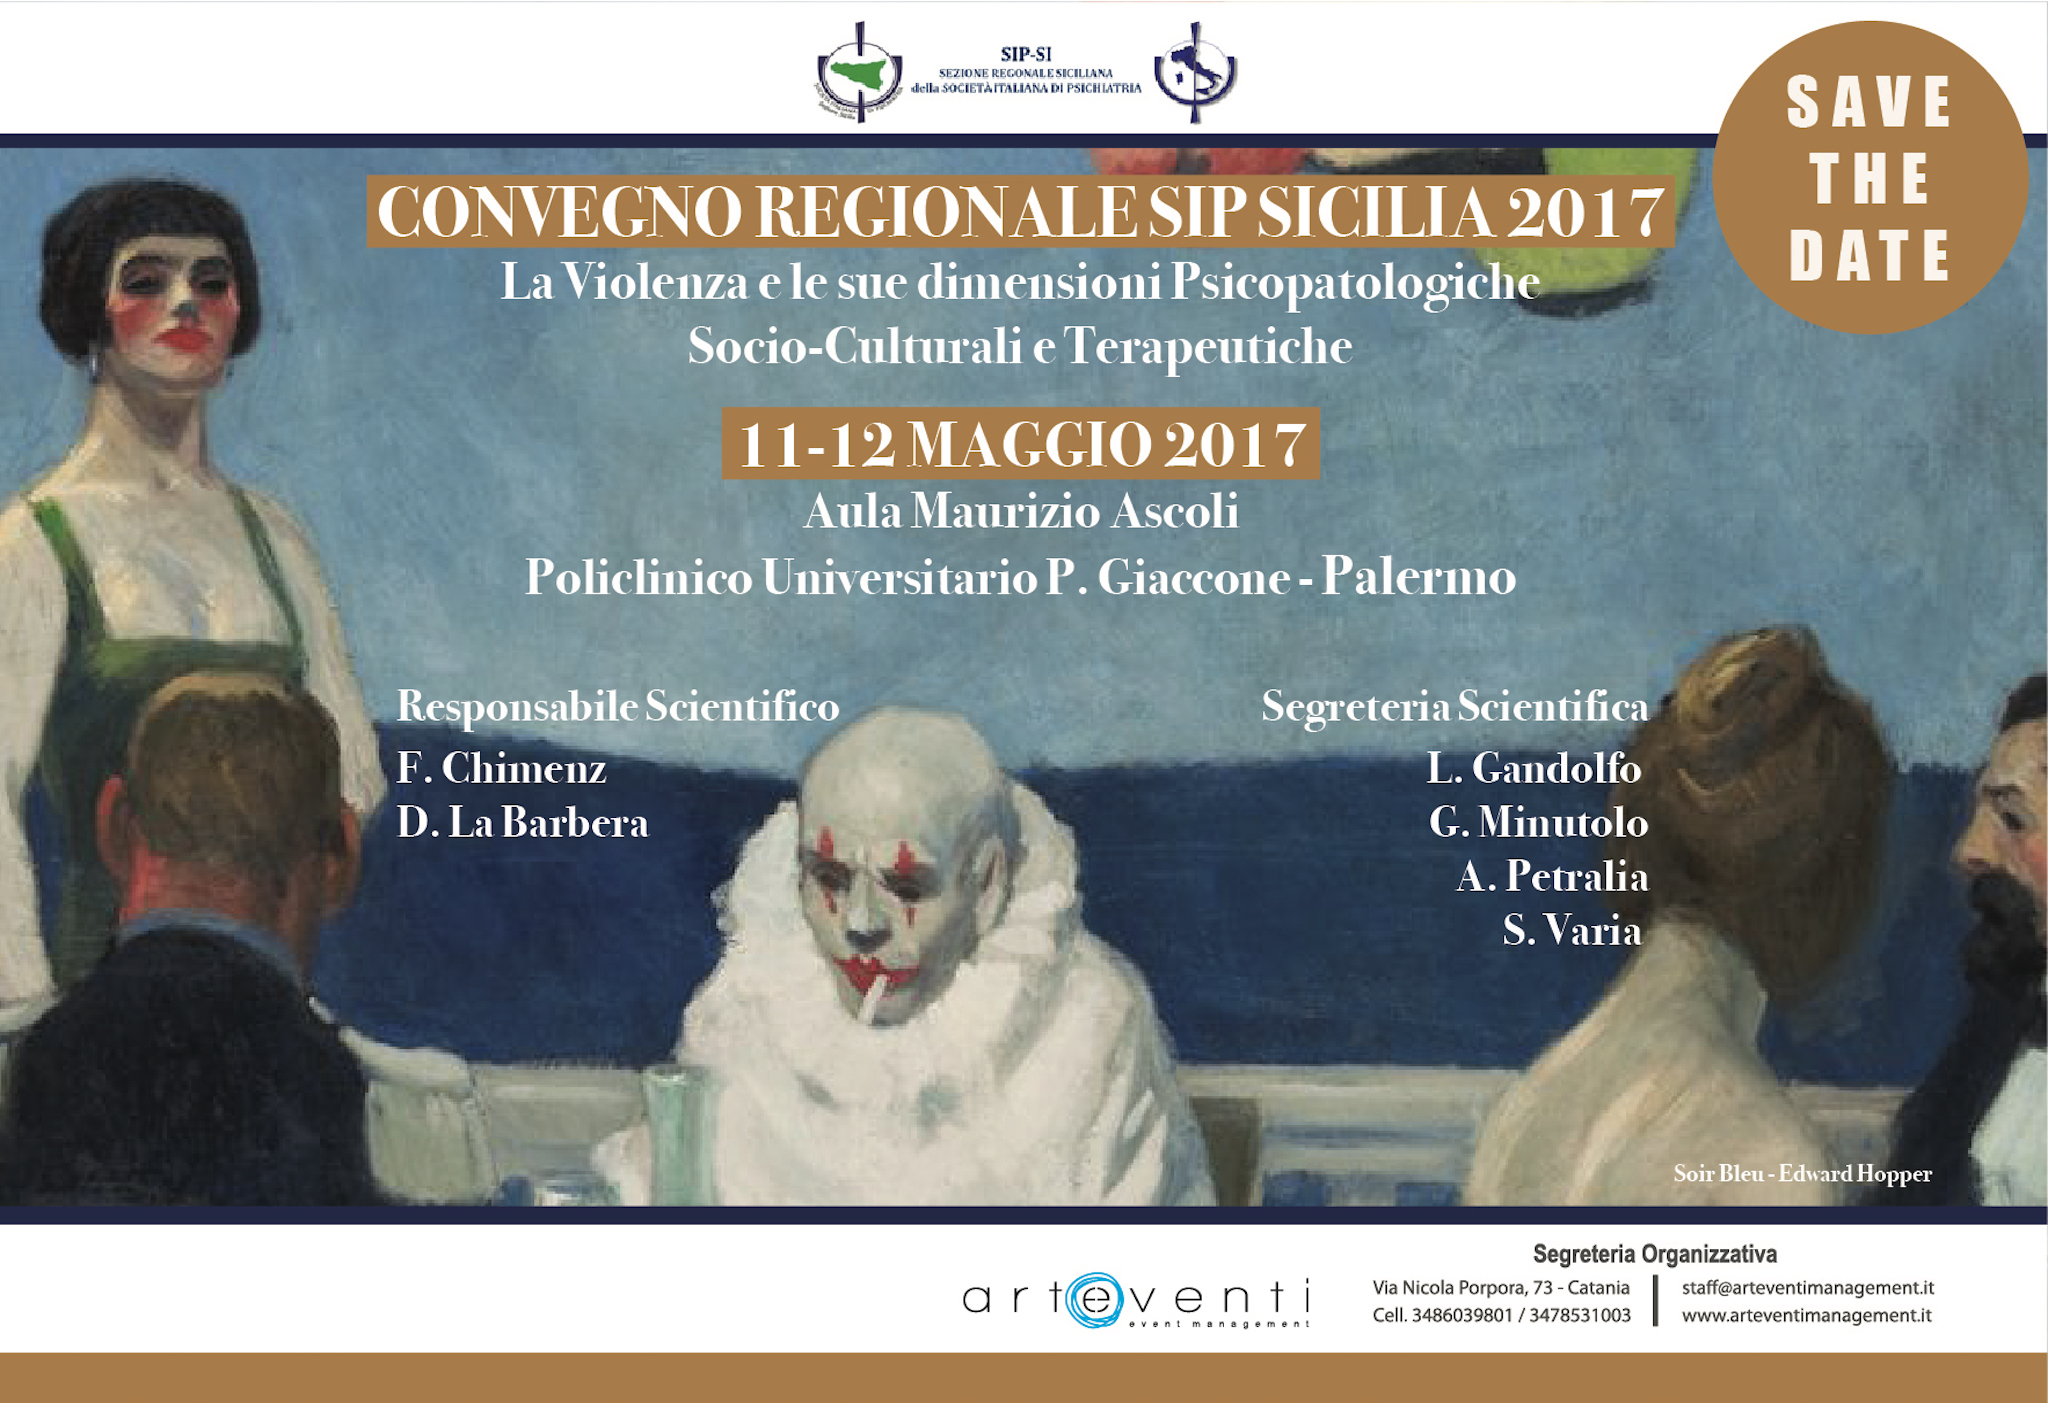 CONVEGNO REGIONALE SIP SICILIA 2017 " La Violenza e le sue dimensioni psicopatologiche... 